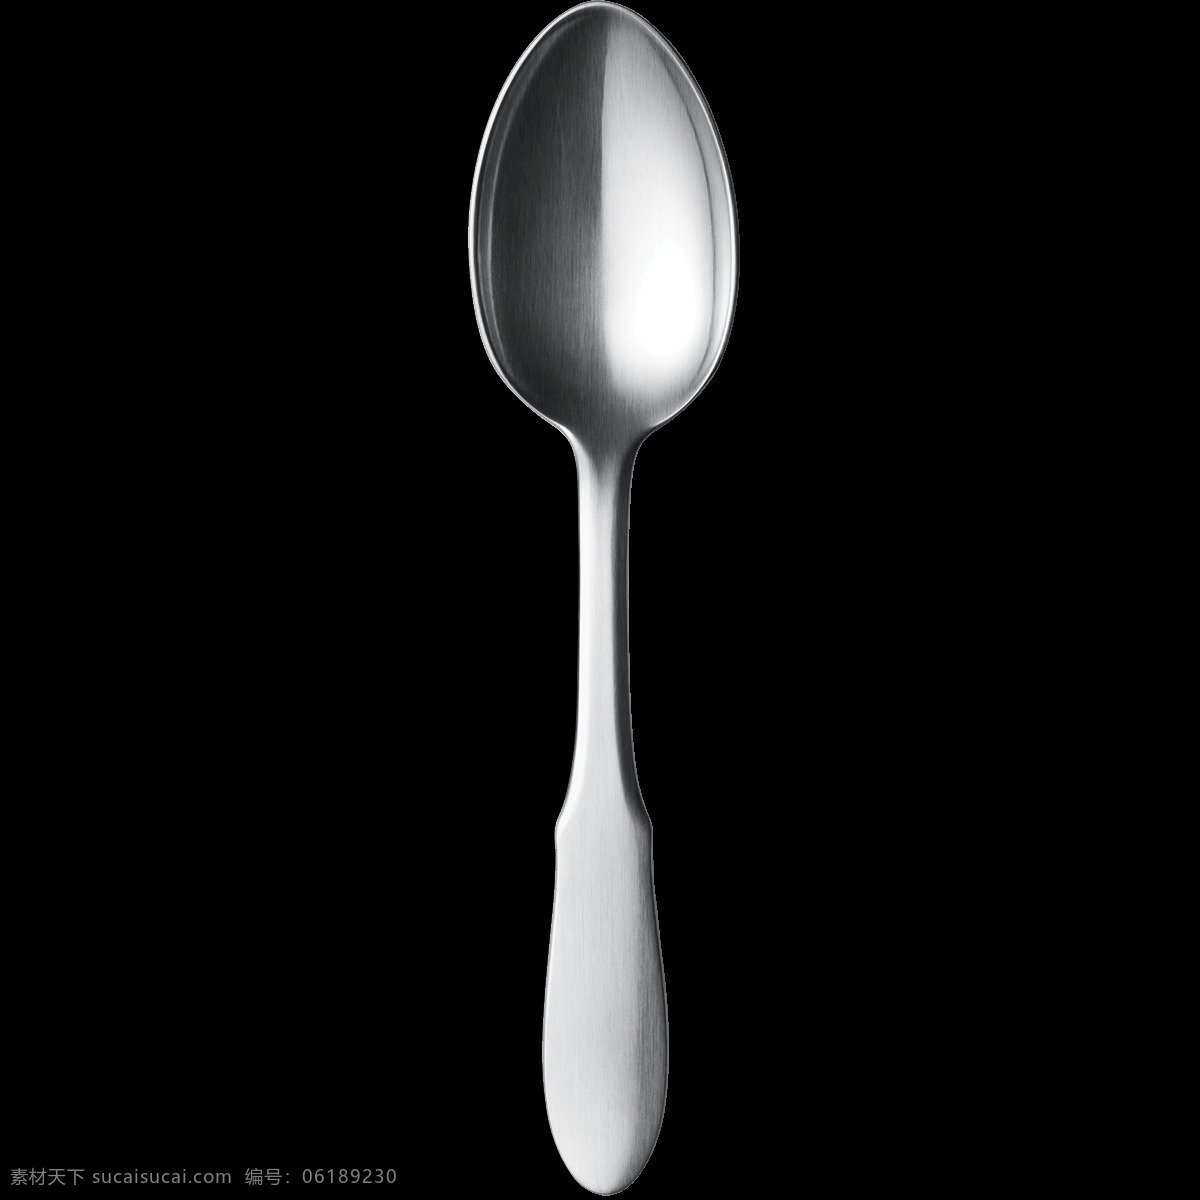 闪光 不锈钢 勺子 透明 不锈钢勺子 餐具海报图片 餐具广告素材 椭圆形 元素